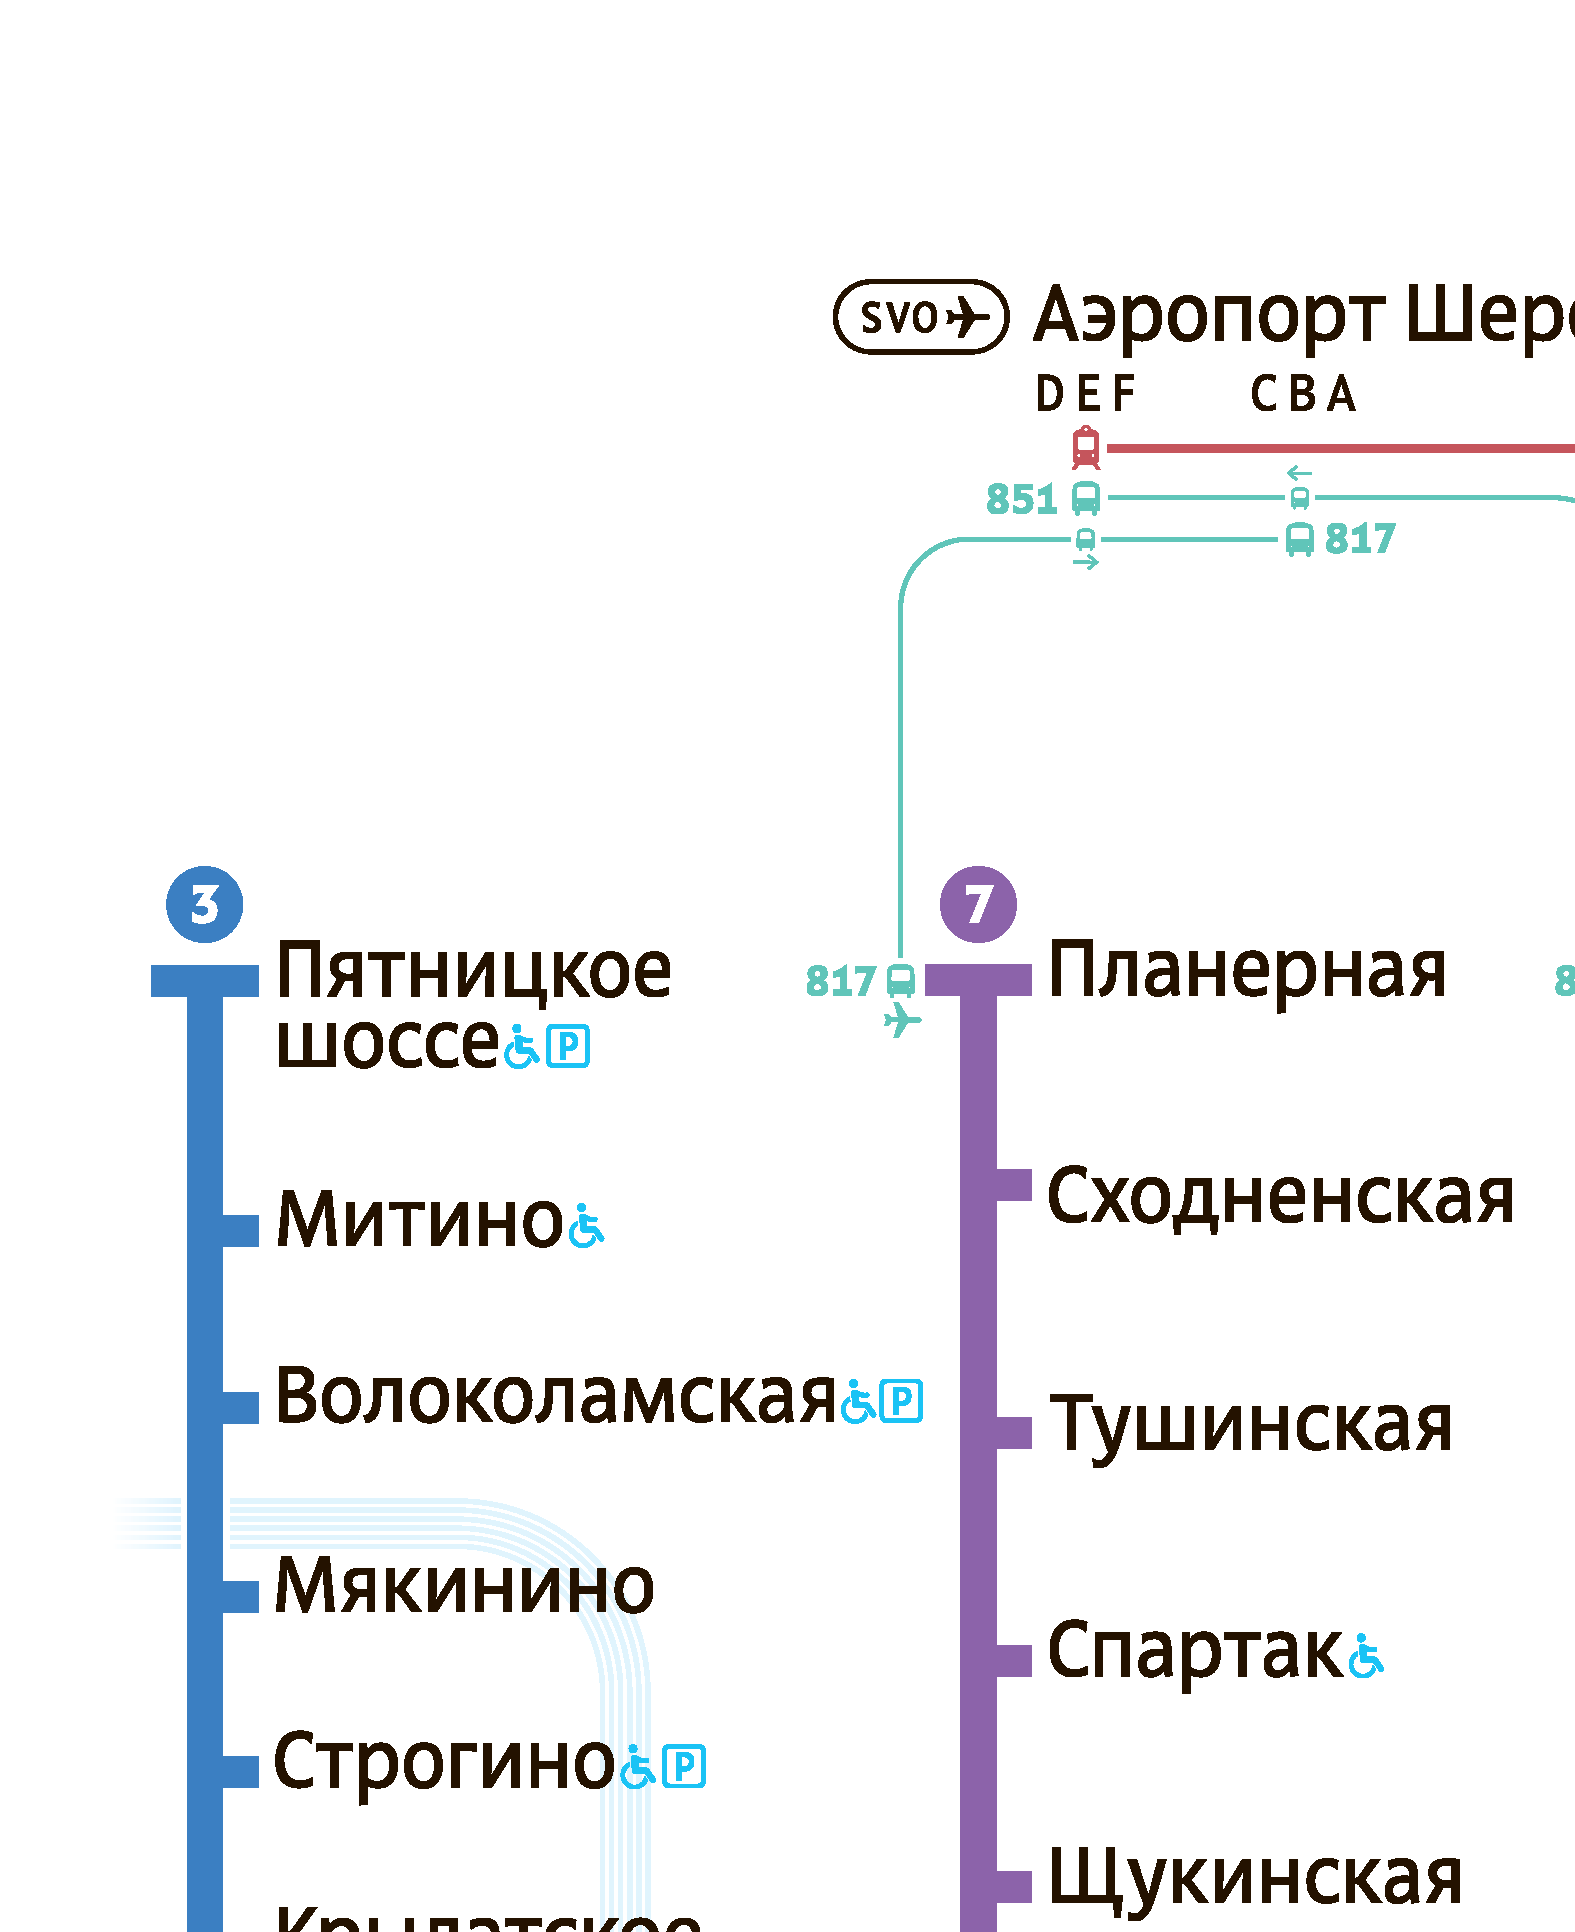 Карта метро Москвы